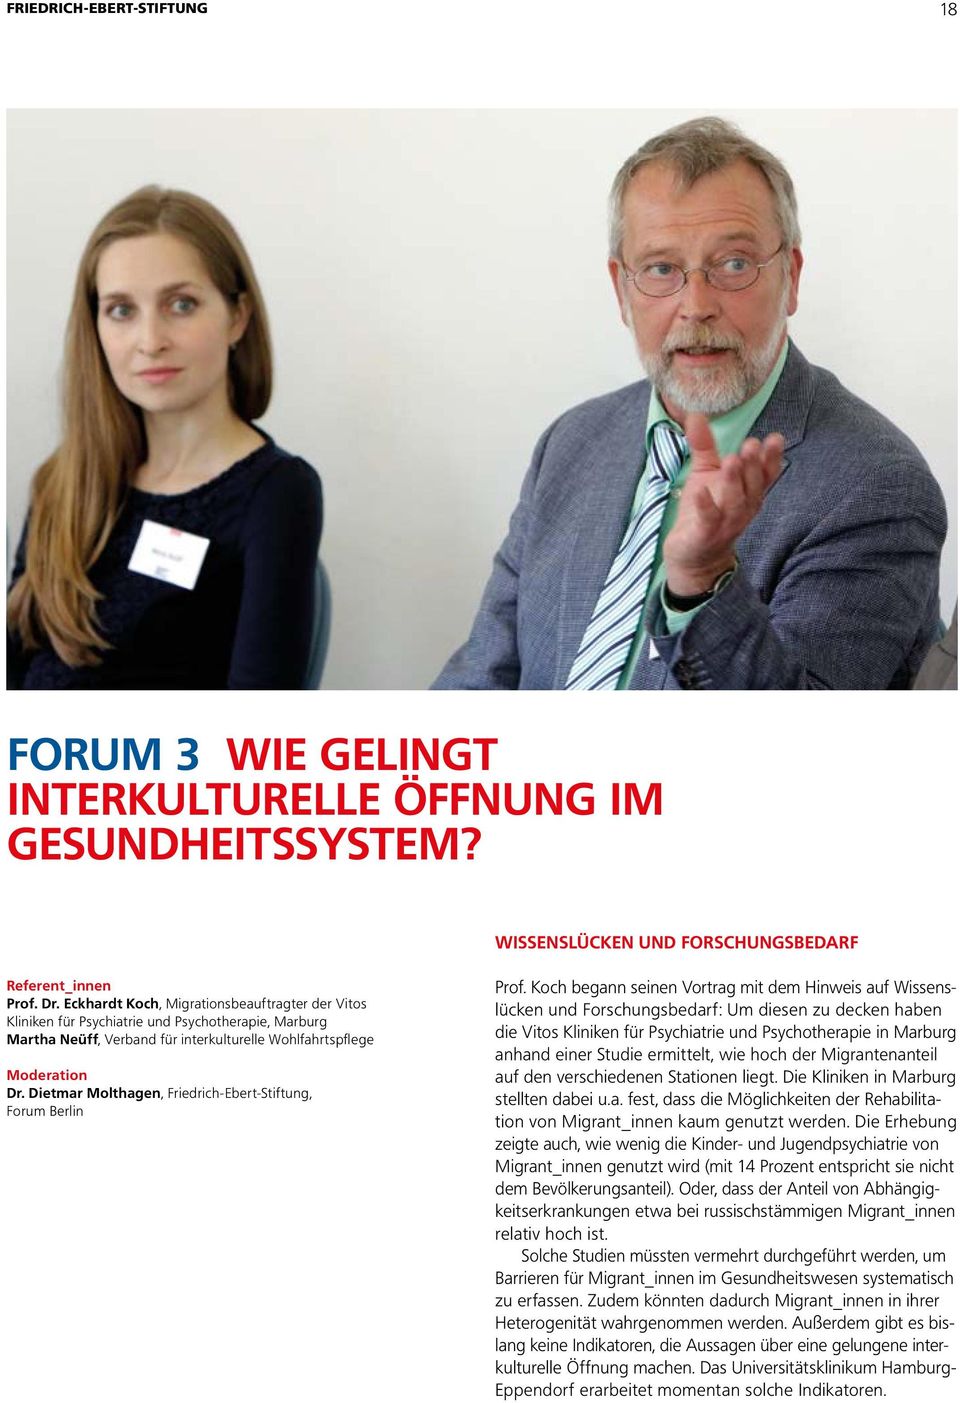 Dietmar Molthagen, Friedrich-Ebert-Stiftung, Forum Berlin Prof.